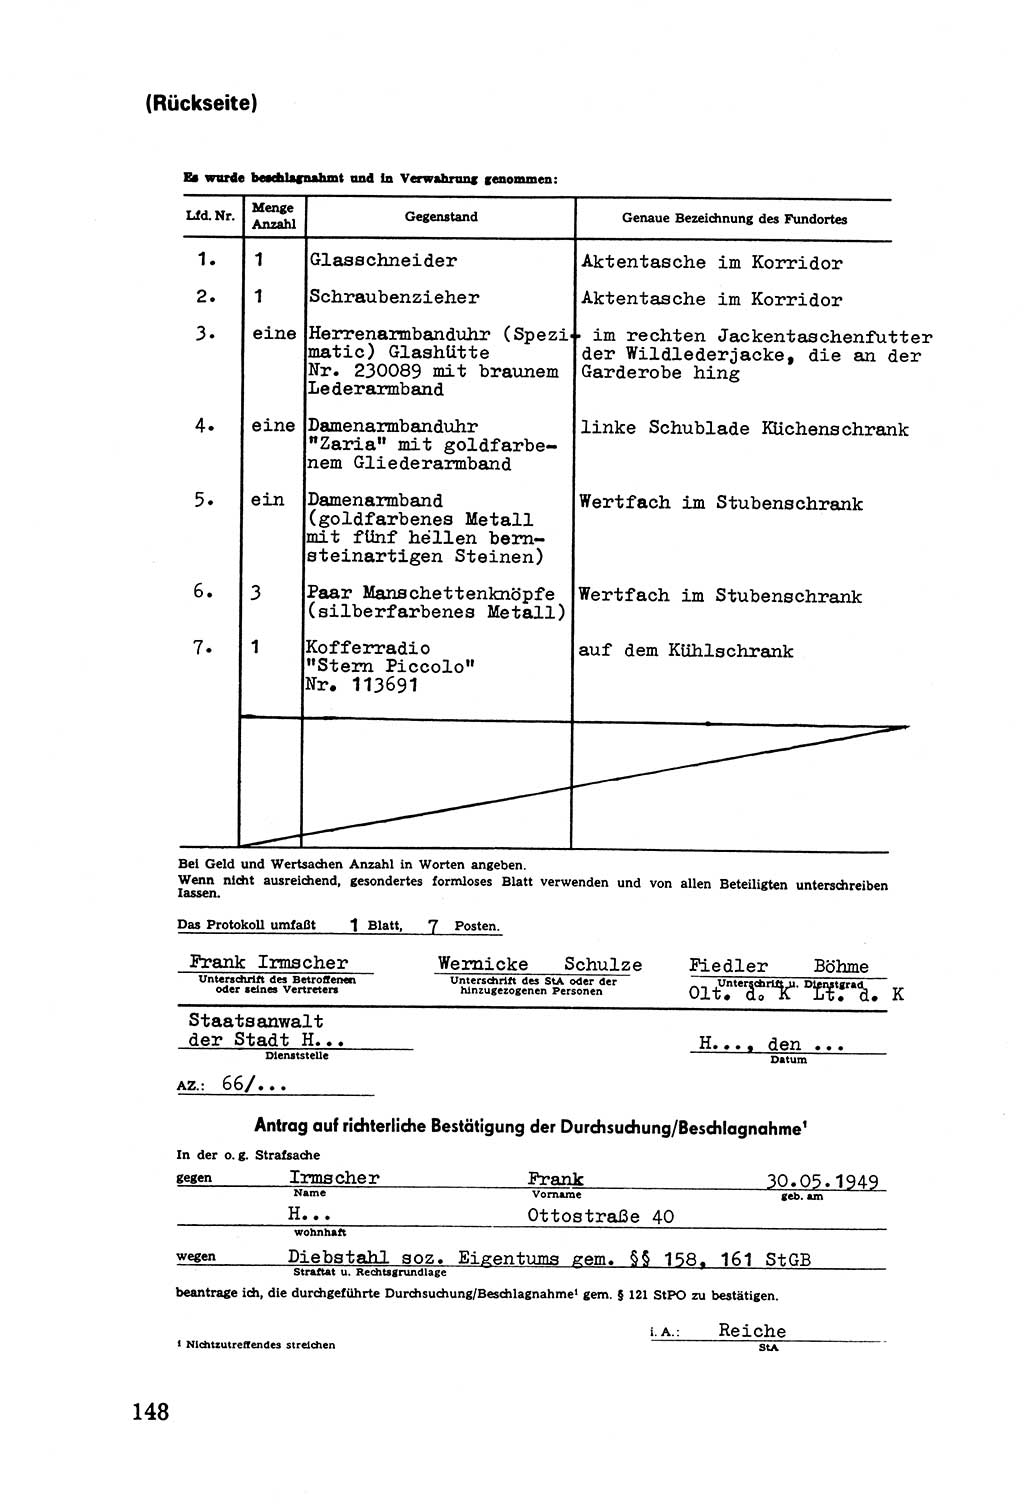 Die Durchsuchung und die Beschlagnahme [Deutsche Demokratische Republik (DDR)] 1979, Seite 148 (Durchs. Beschl. DDR 1979, S. 148)